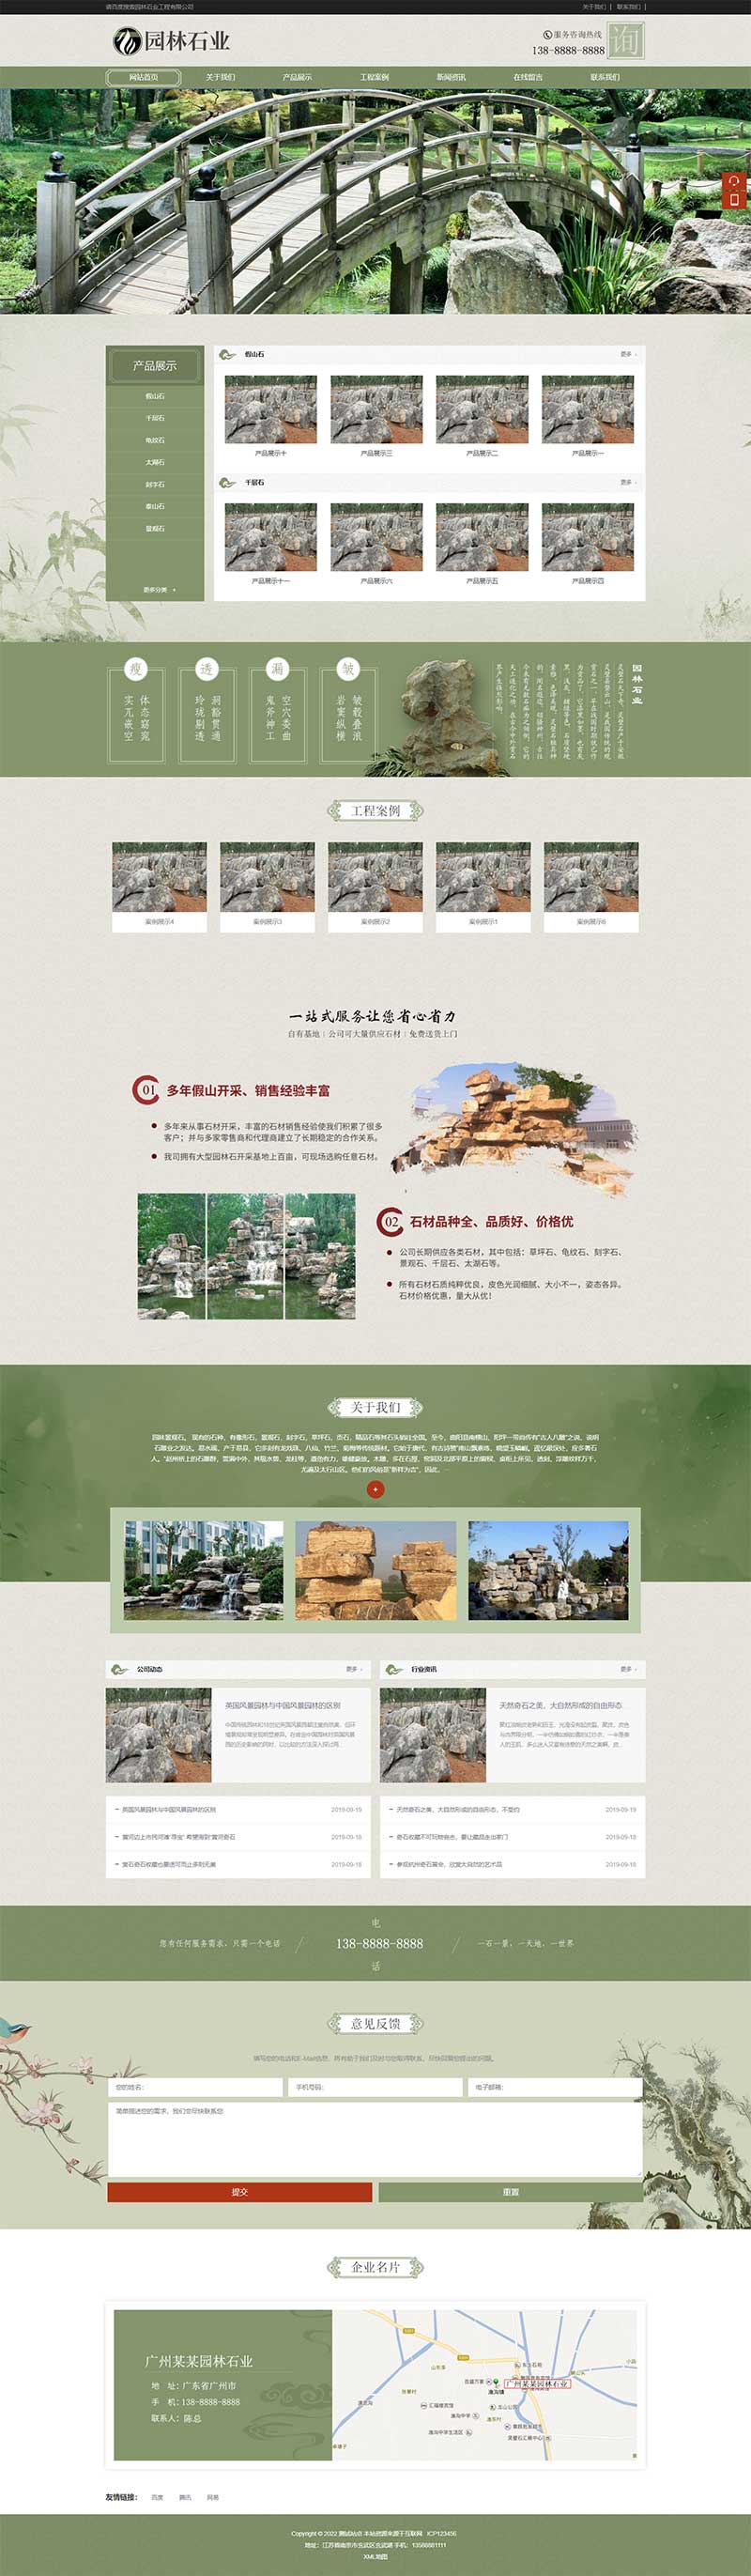 中国风古典园林石业园林景观假山网站Wordpress模板主题效果图